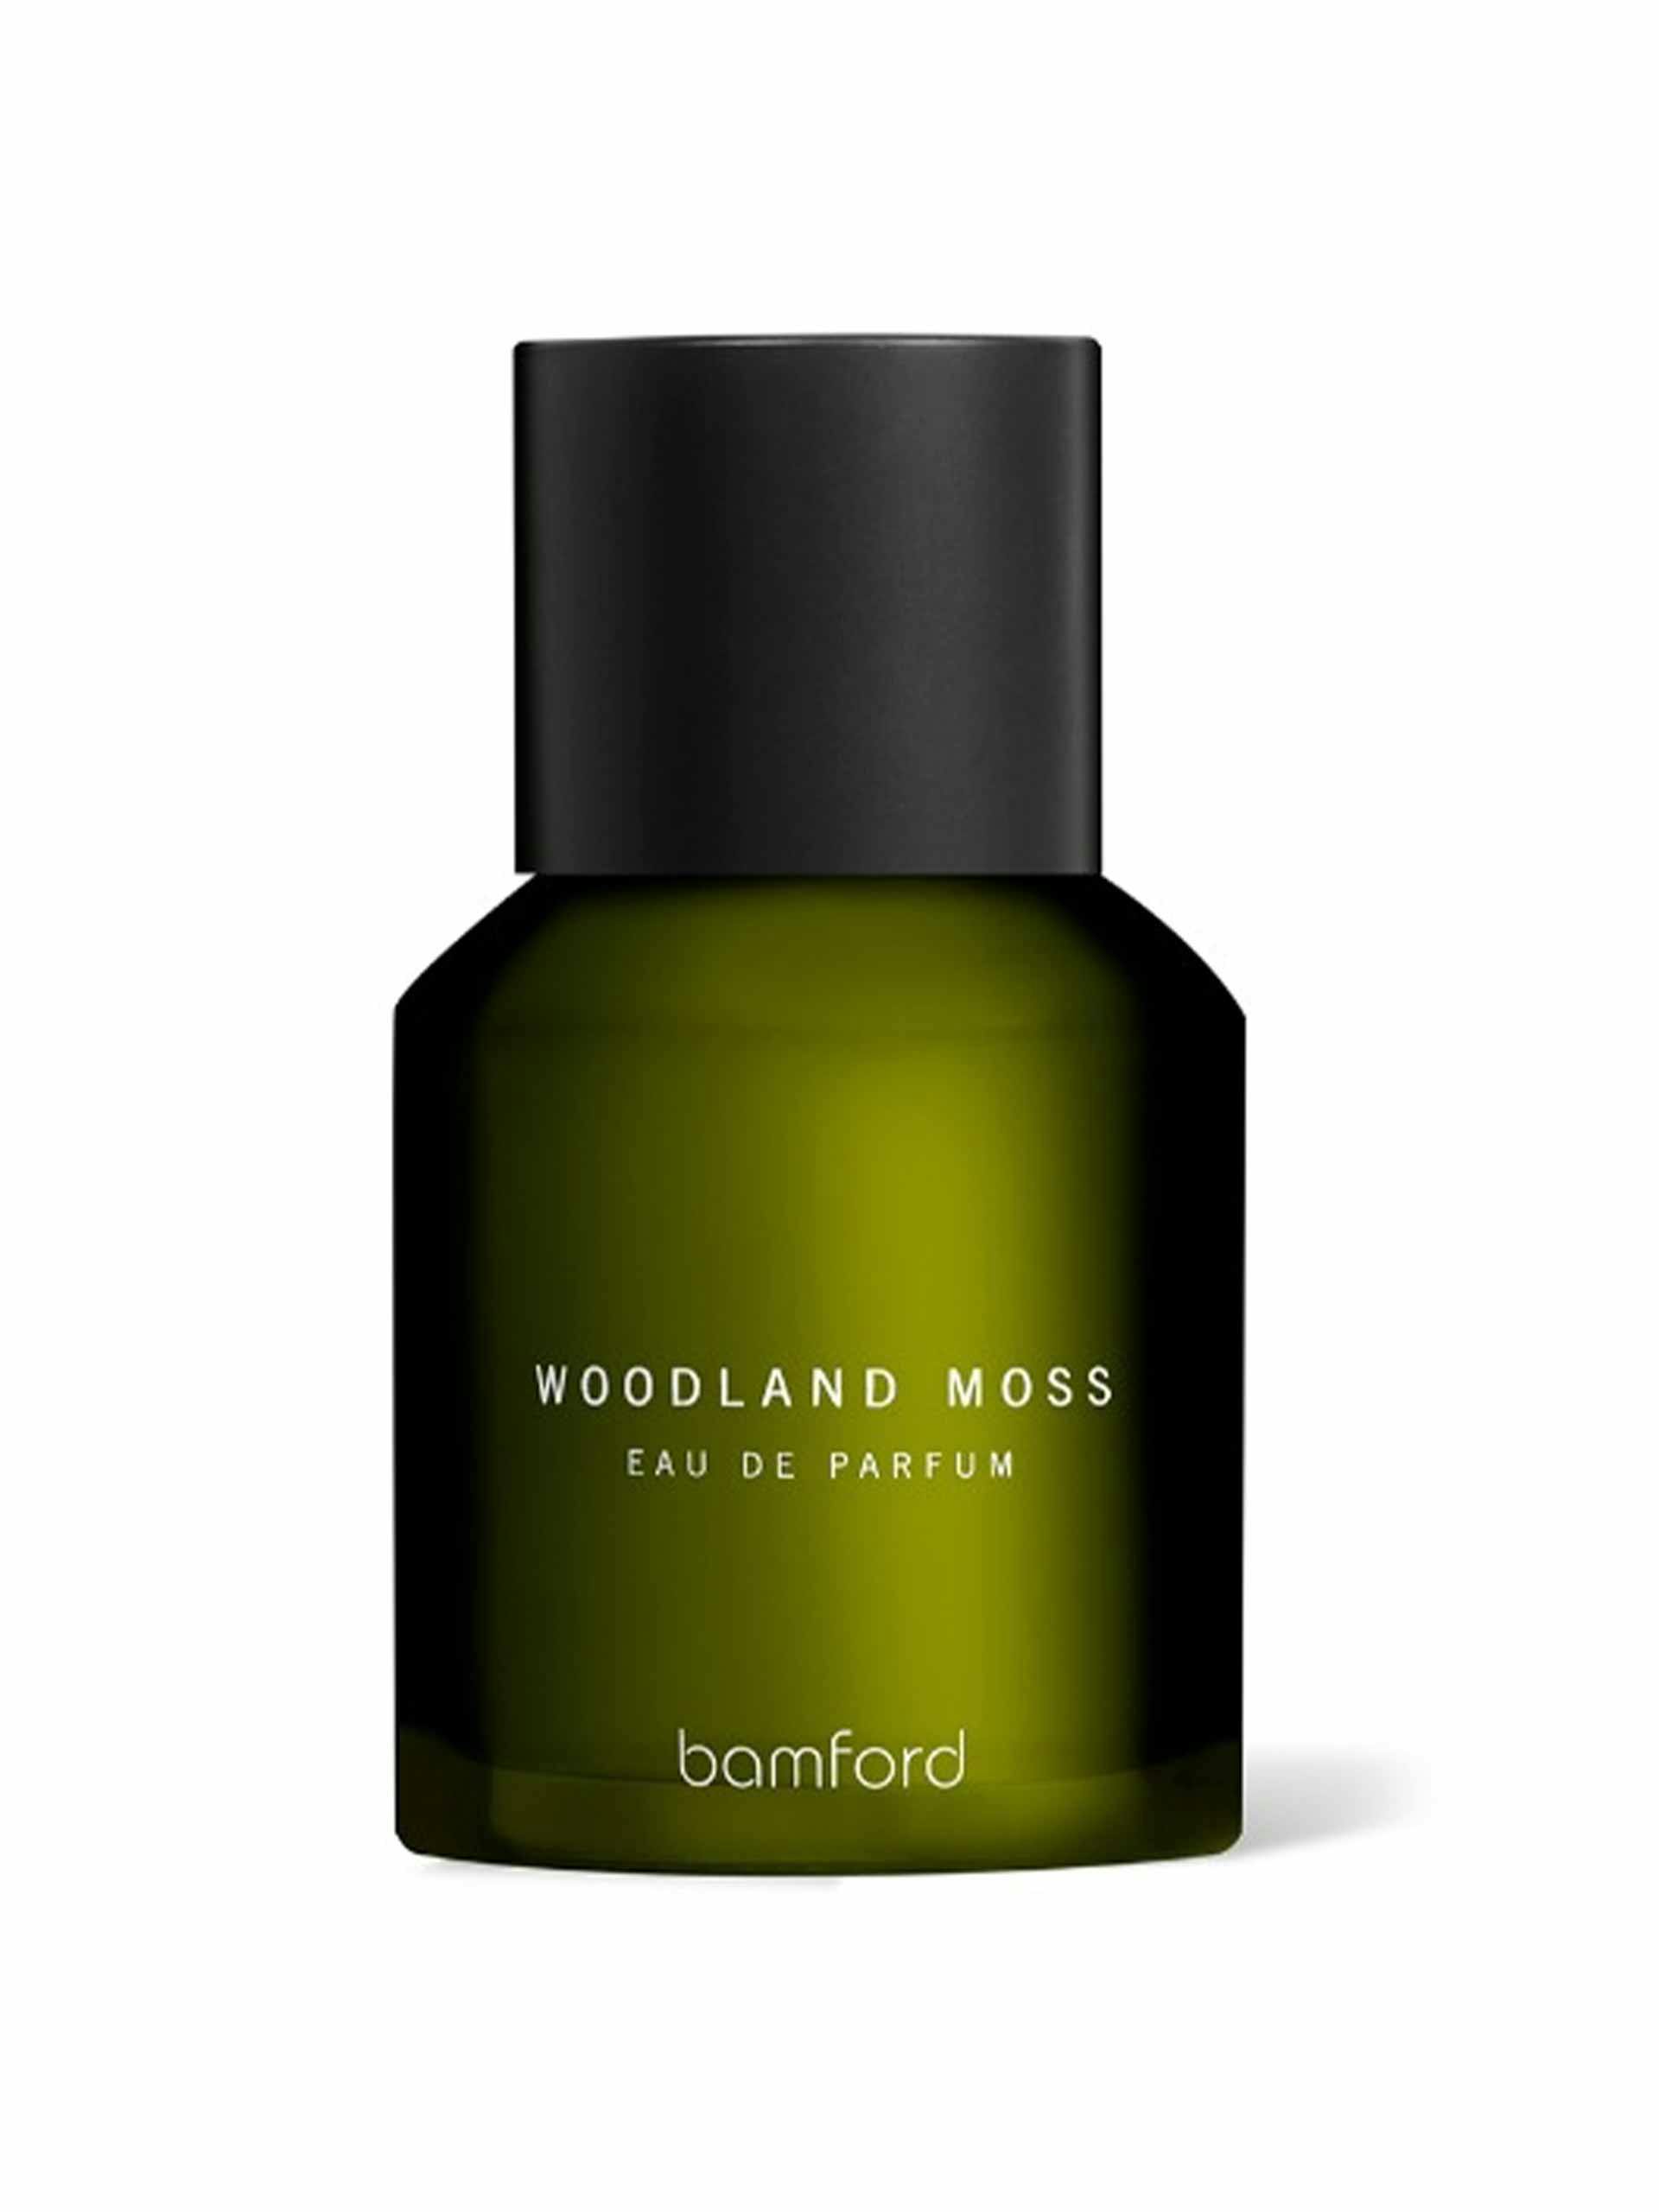 Woodland moss eau de parfum